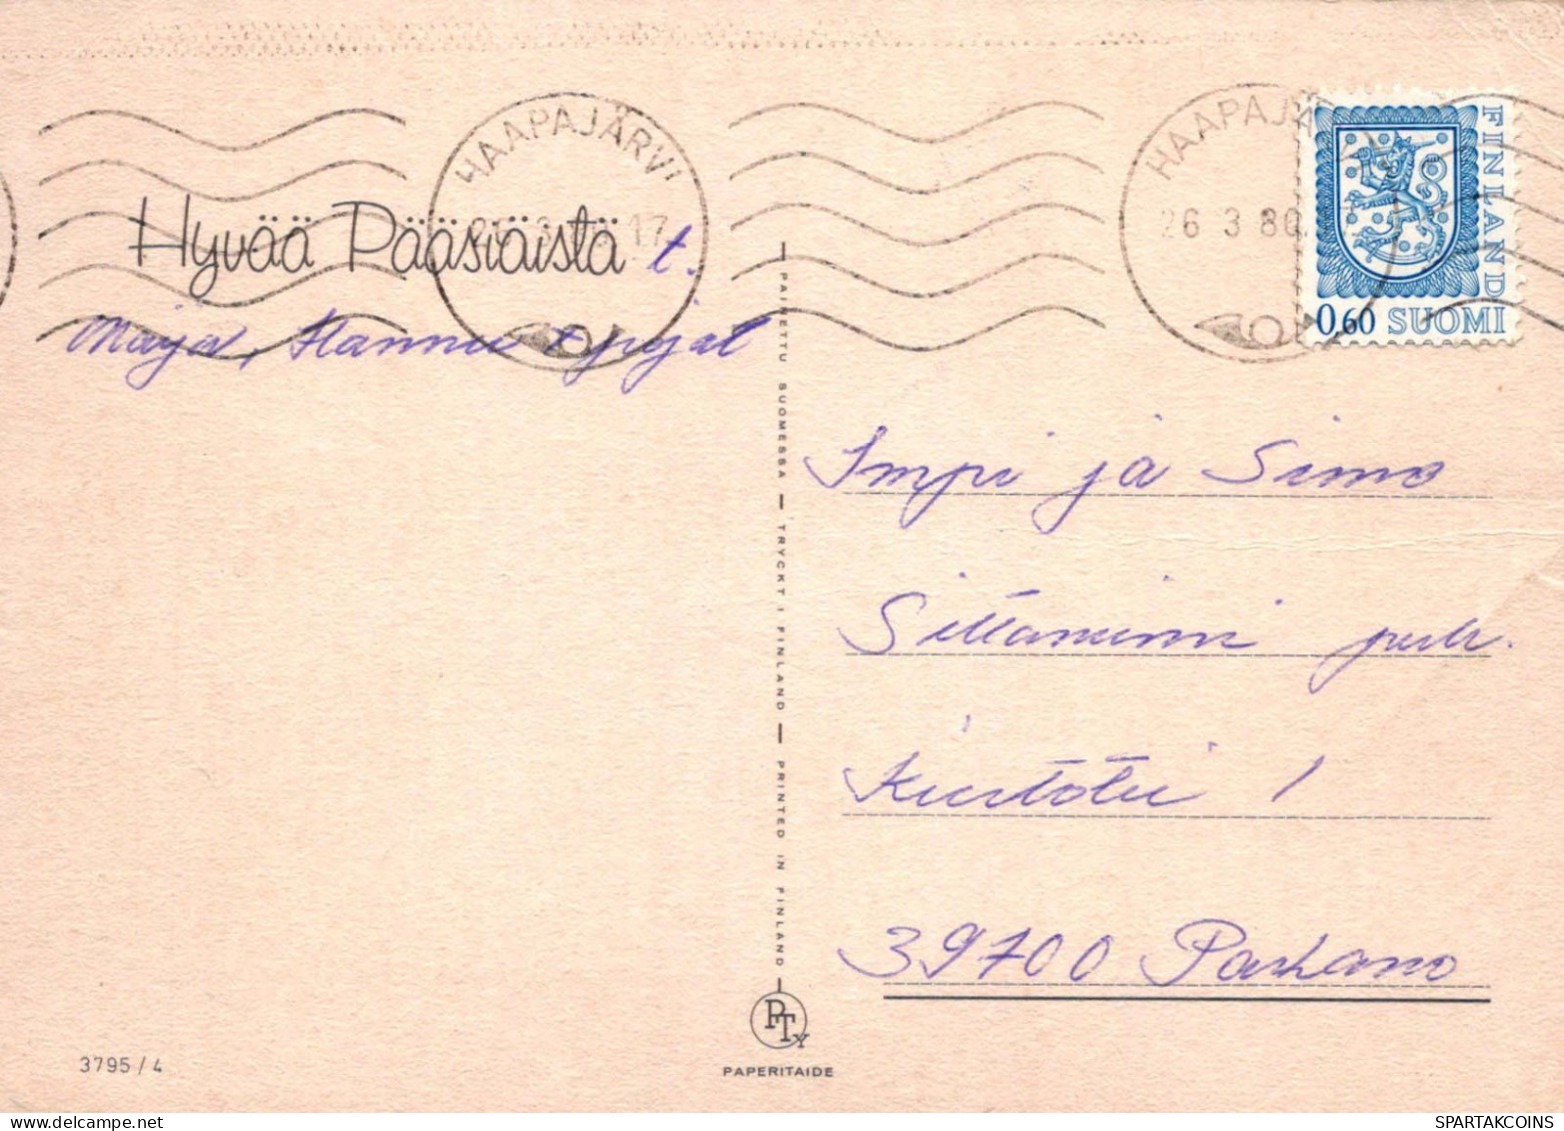 EASTER CHILDREN EGG Vintage Postcard CPSM #PBO276.A - Ostern